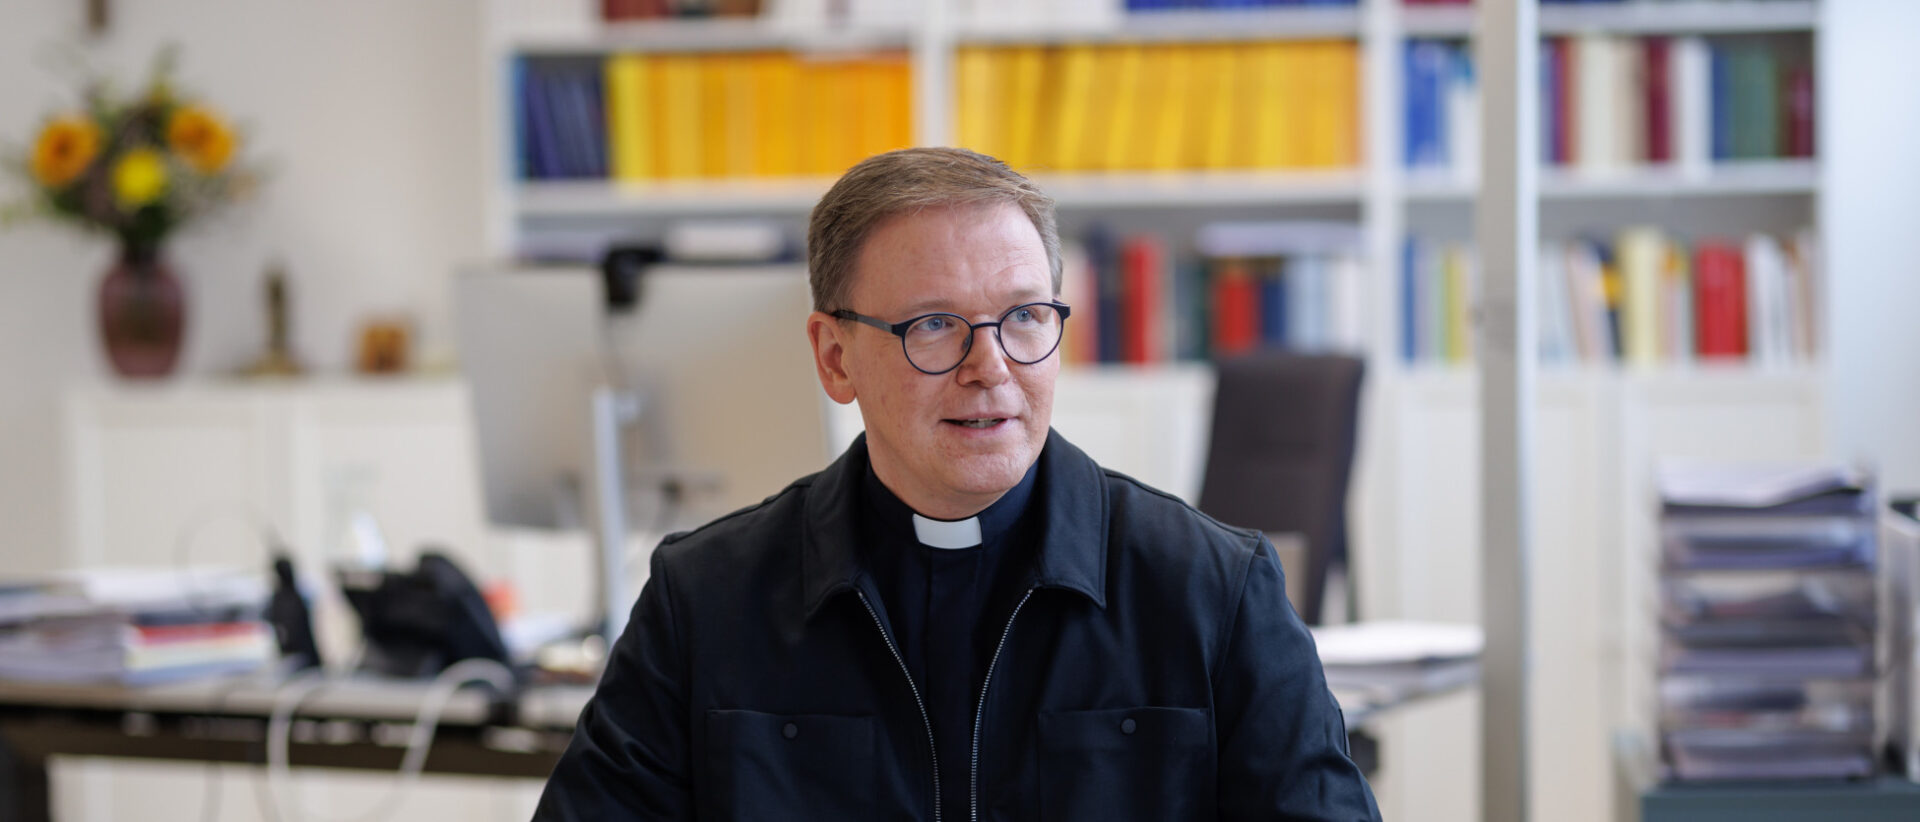 Christoph Ohly ist kommissarischer Rektor der Kölner Hochschule für Katholische Theologie.